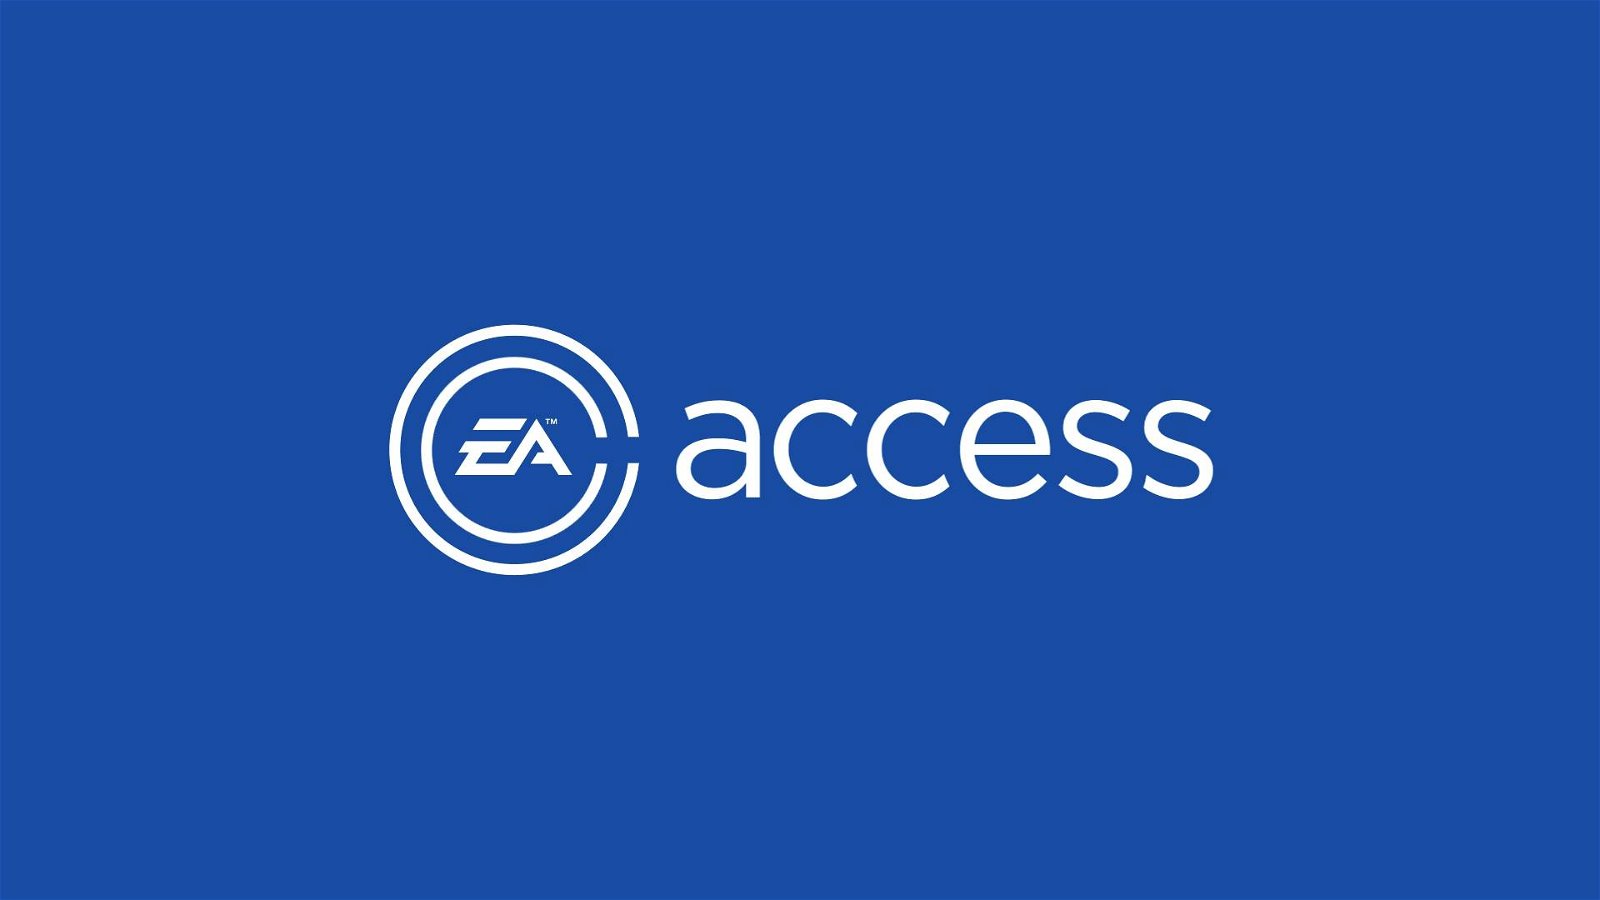 Immagine di EA Access pronto ad arrivare su PS4?